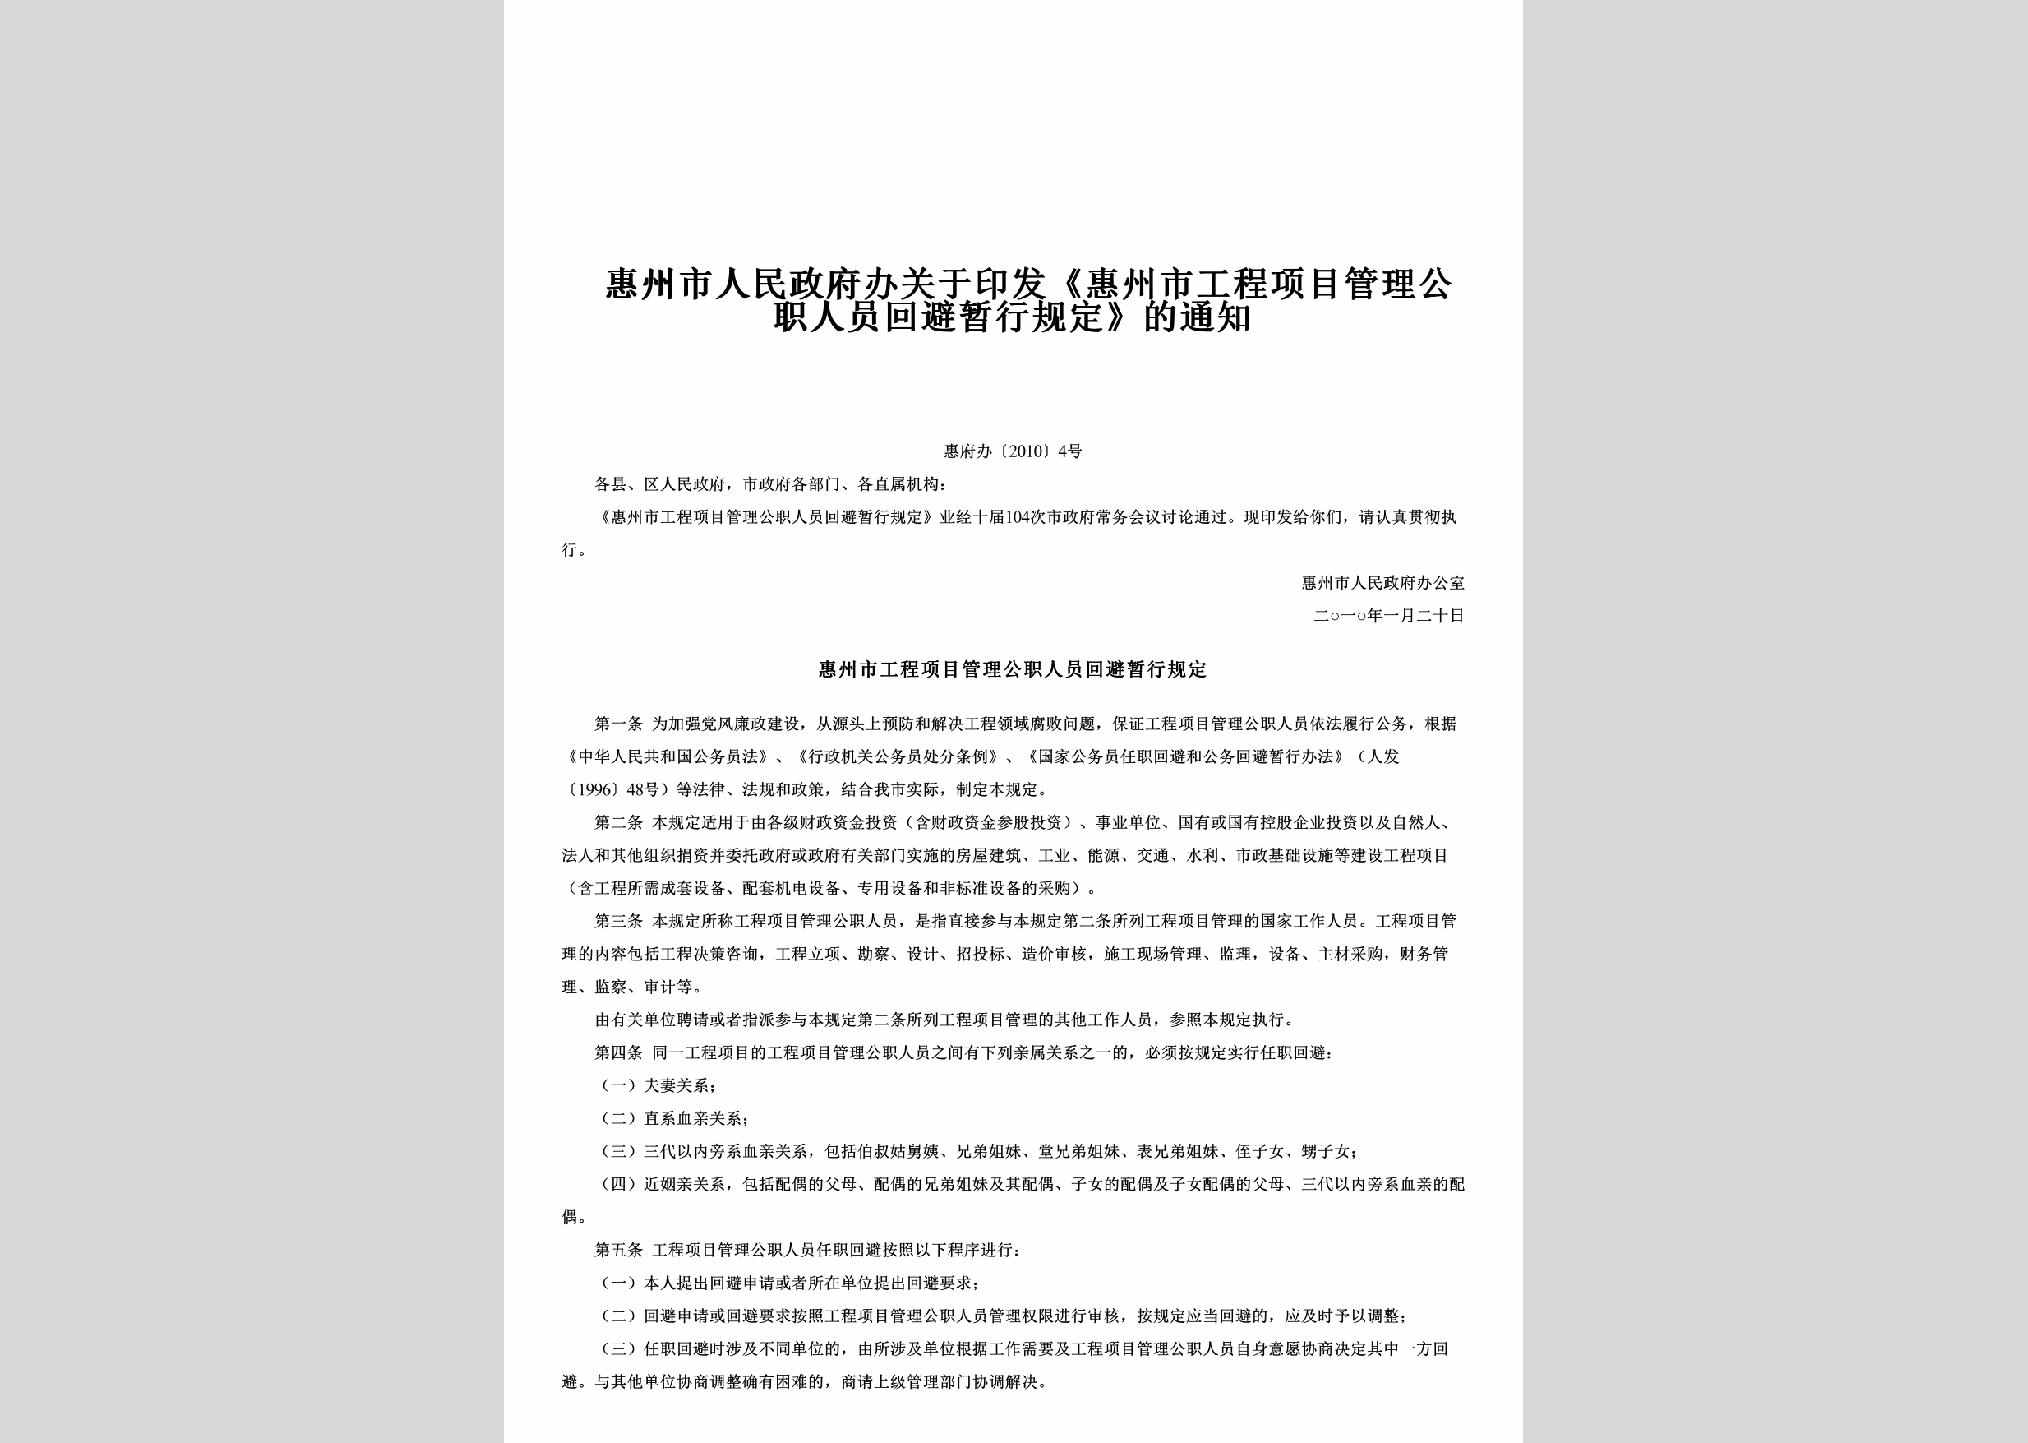 惠府办[2010]4号：关于印发《惠州市工程项目管理公职人员回避暂行规定》的通知